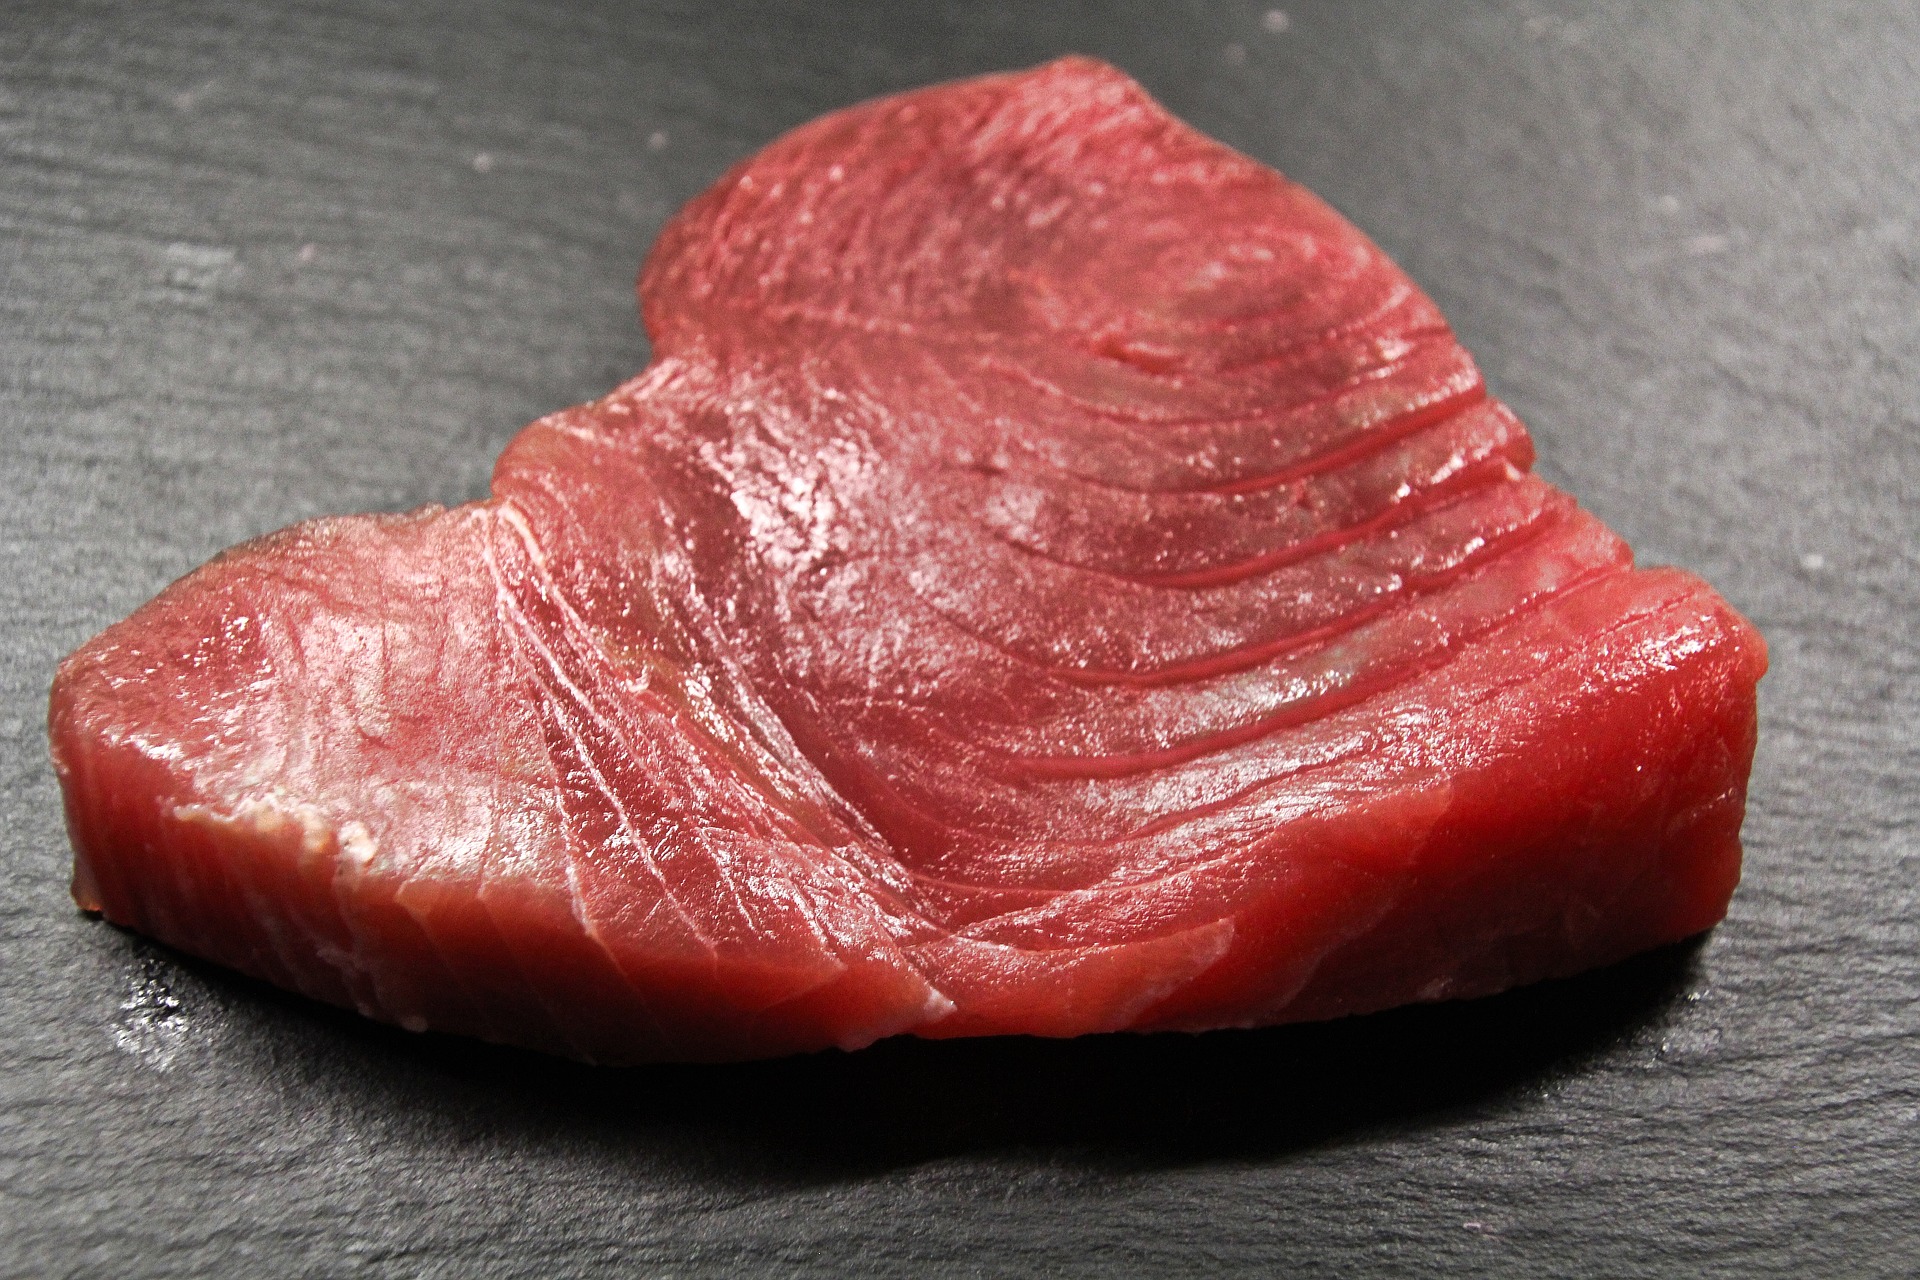 Benefit of tuna fish